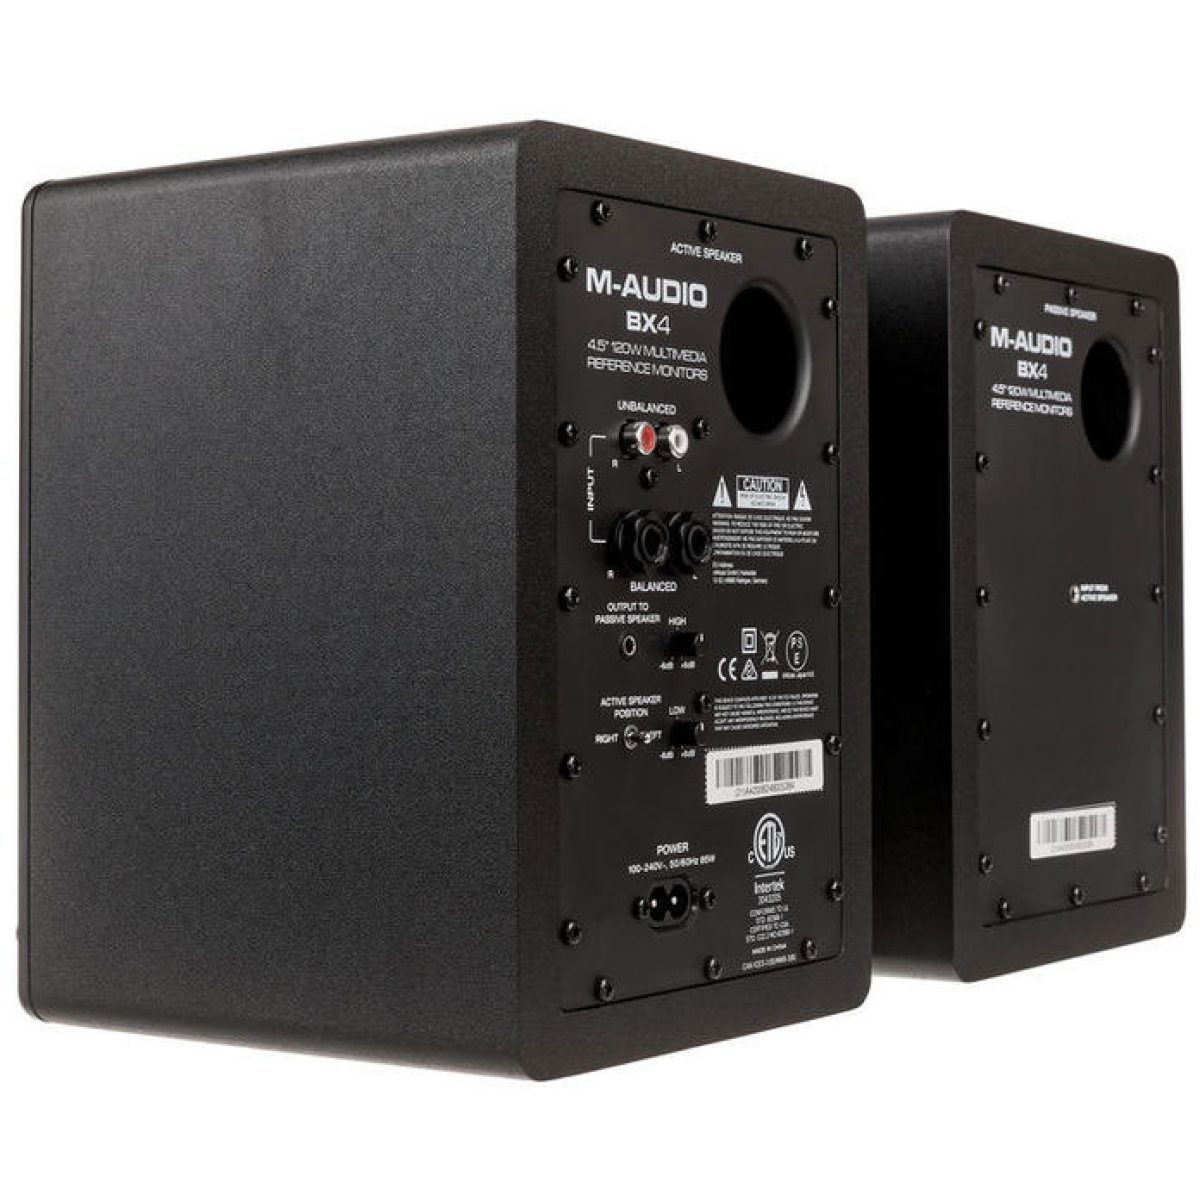 Audio bx. M-Audio bx4. M-Audio bx5 d2. M-Audio bx4 pair. Студийные мониторы комплект m-Audio bx4.